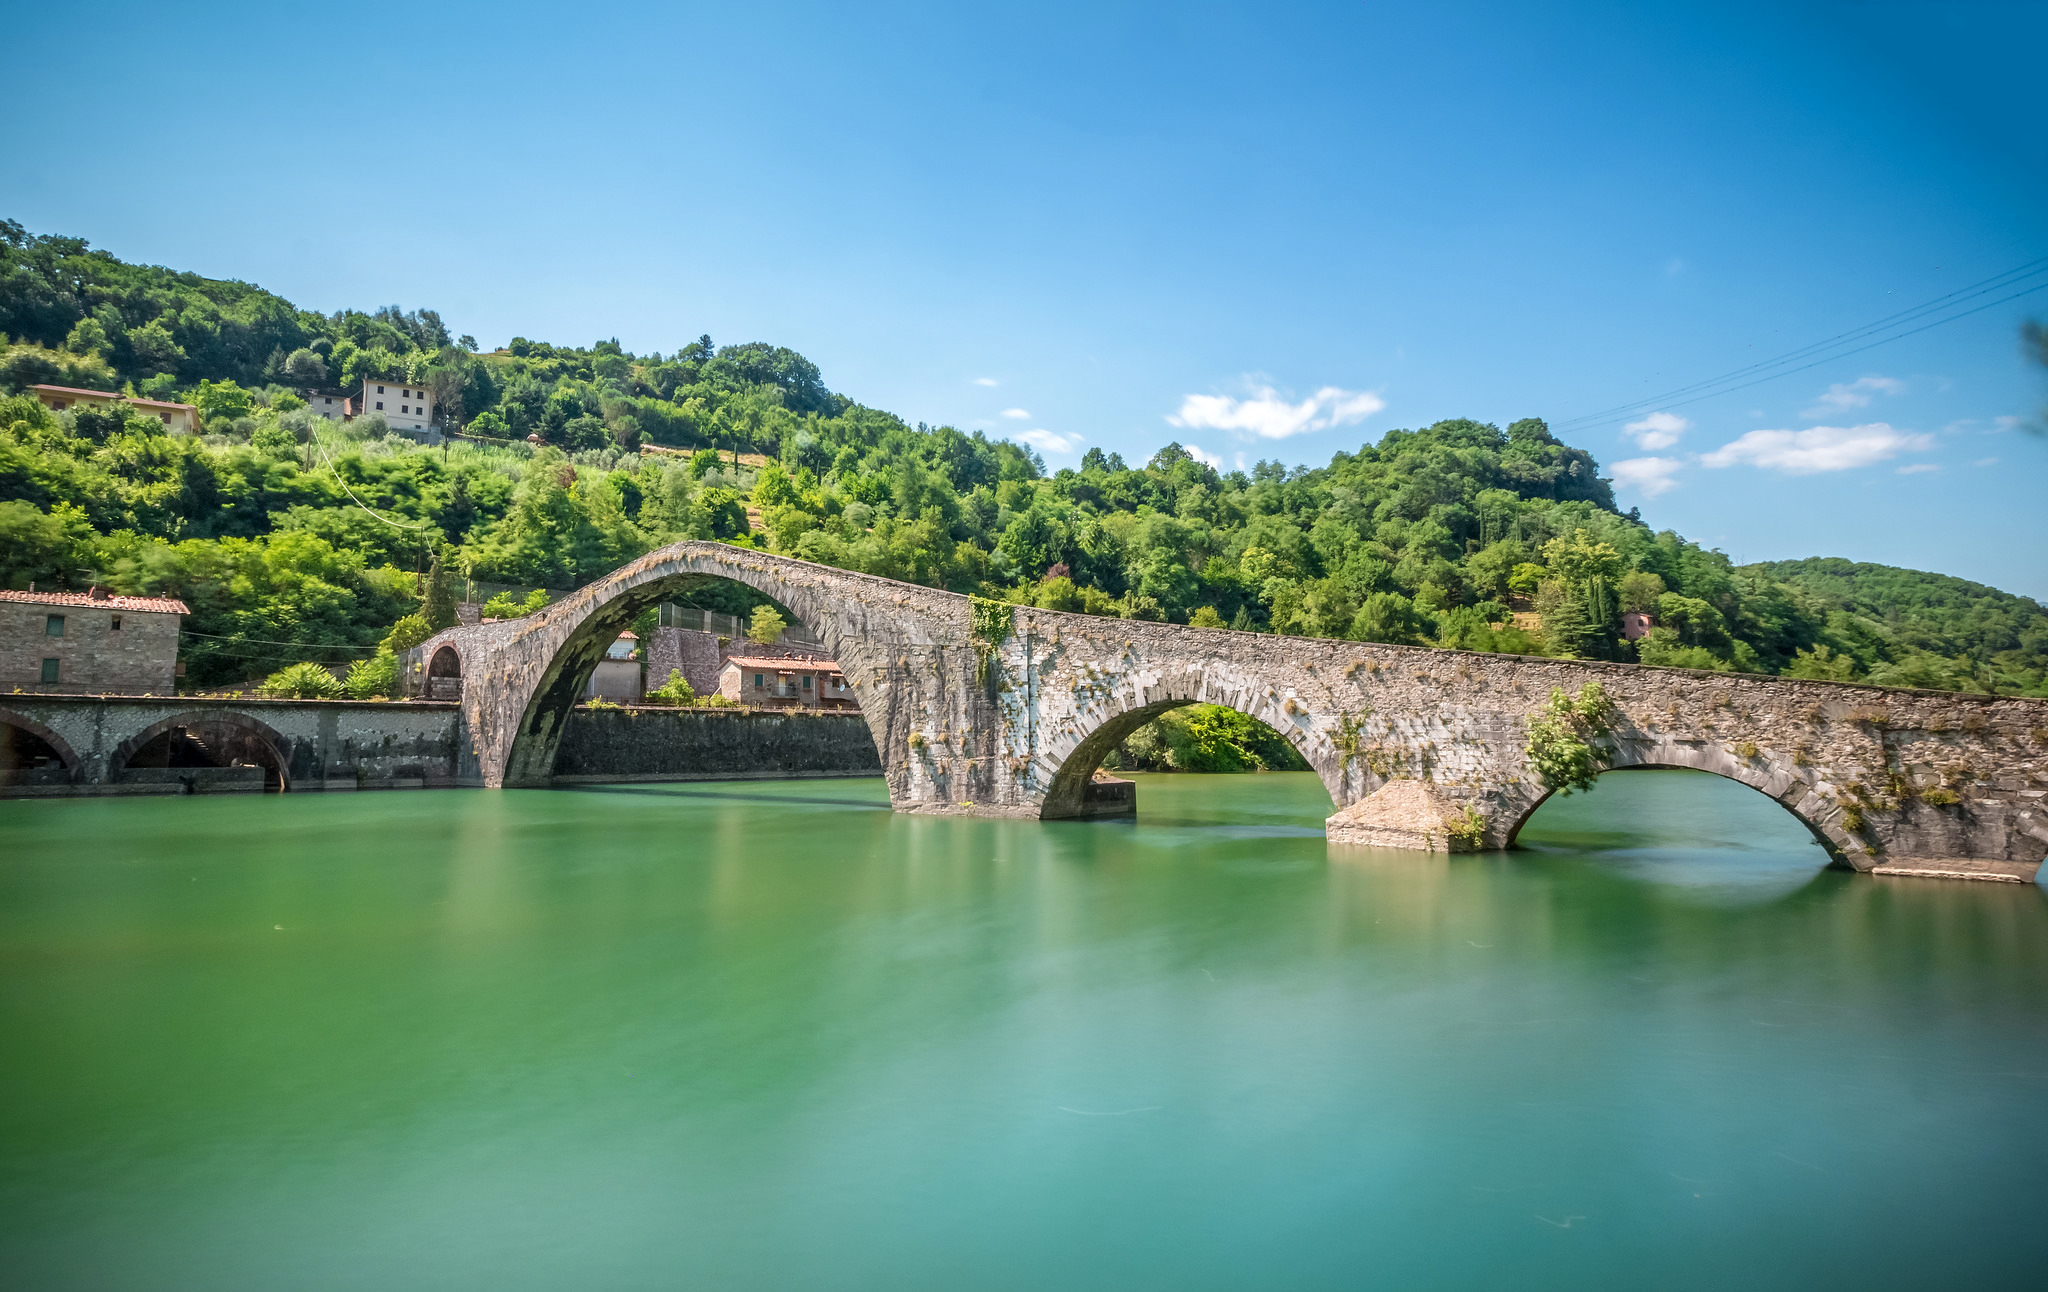 Река магдалена. Мост Солкан Словения. Тоскана Италия реки. Борго-а-Моццано (Тоскана).